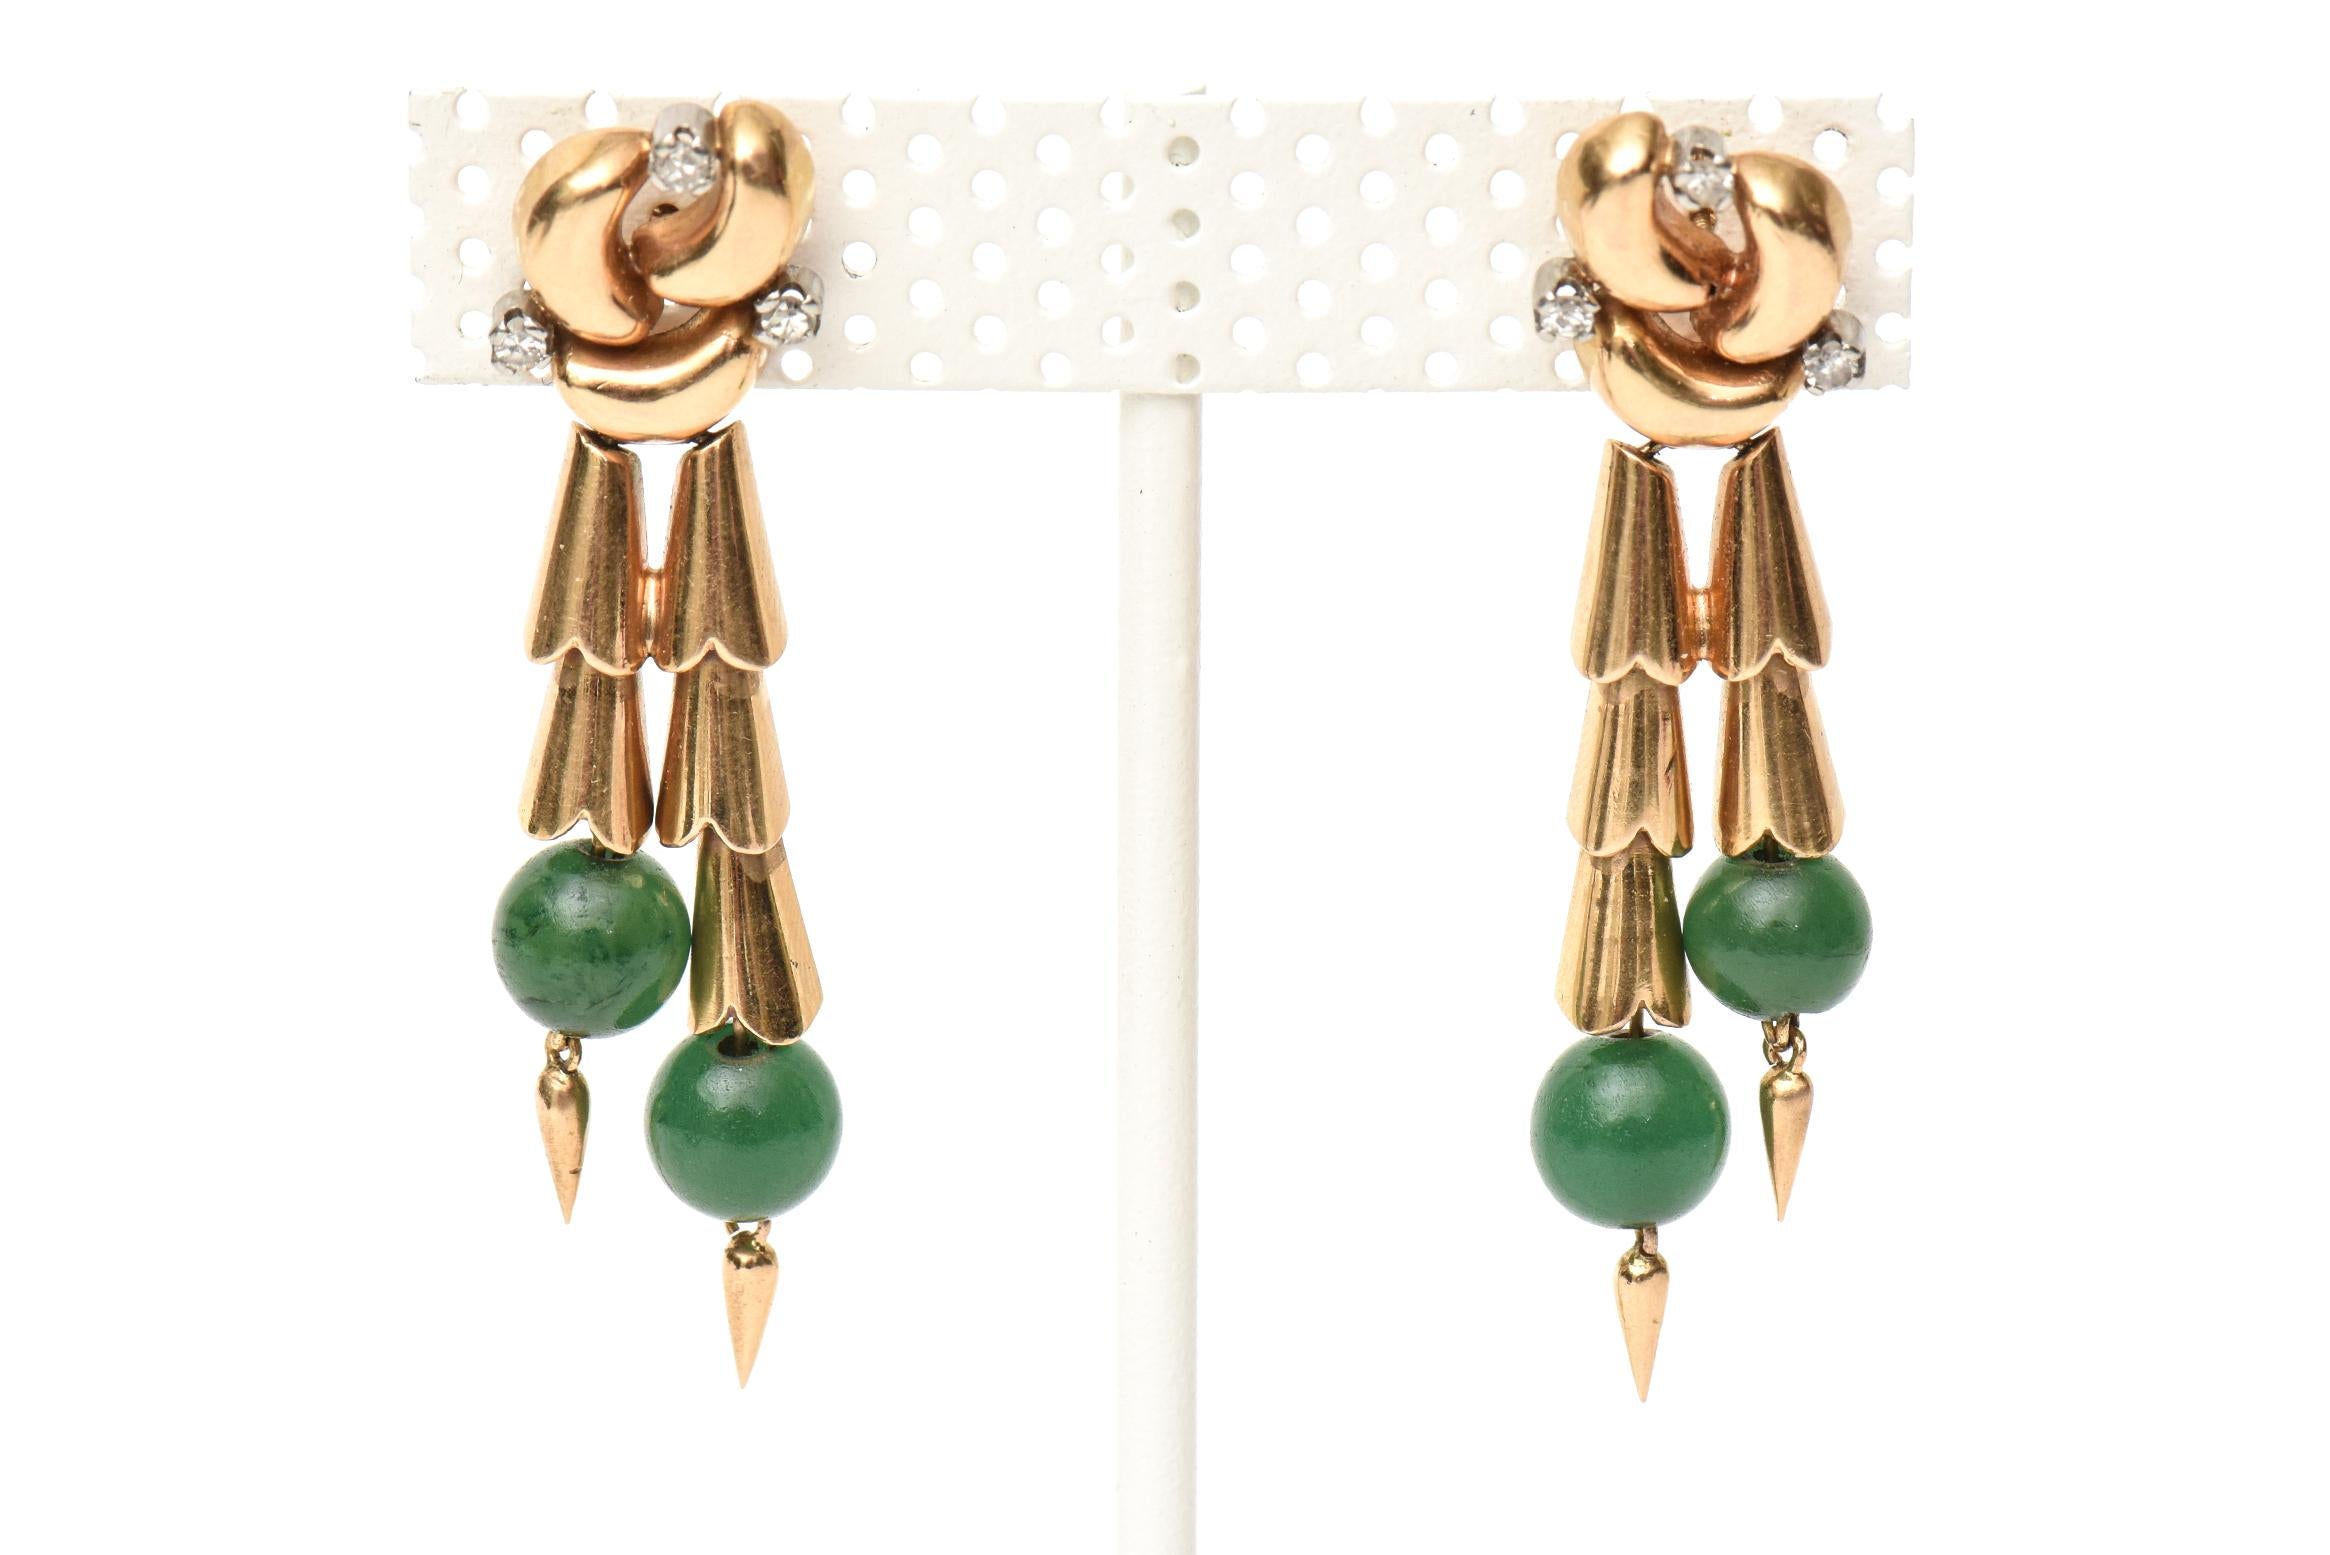 Dieses atemberaubende Paar Ohrringe im Retro-Stil der 1940er Jahre ist mit Jadekugeln, 14-karätigem Roségold und winzigen Diamanten besetzt. Sie sind elegant und man kauft sie wegen des Retro-Looks und des Stils. Sie sind sehr schick und passen